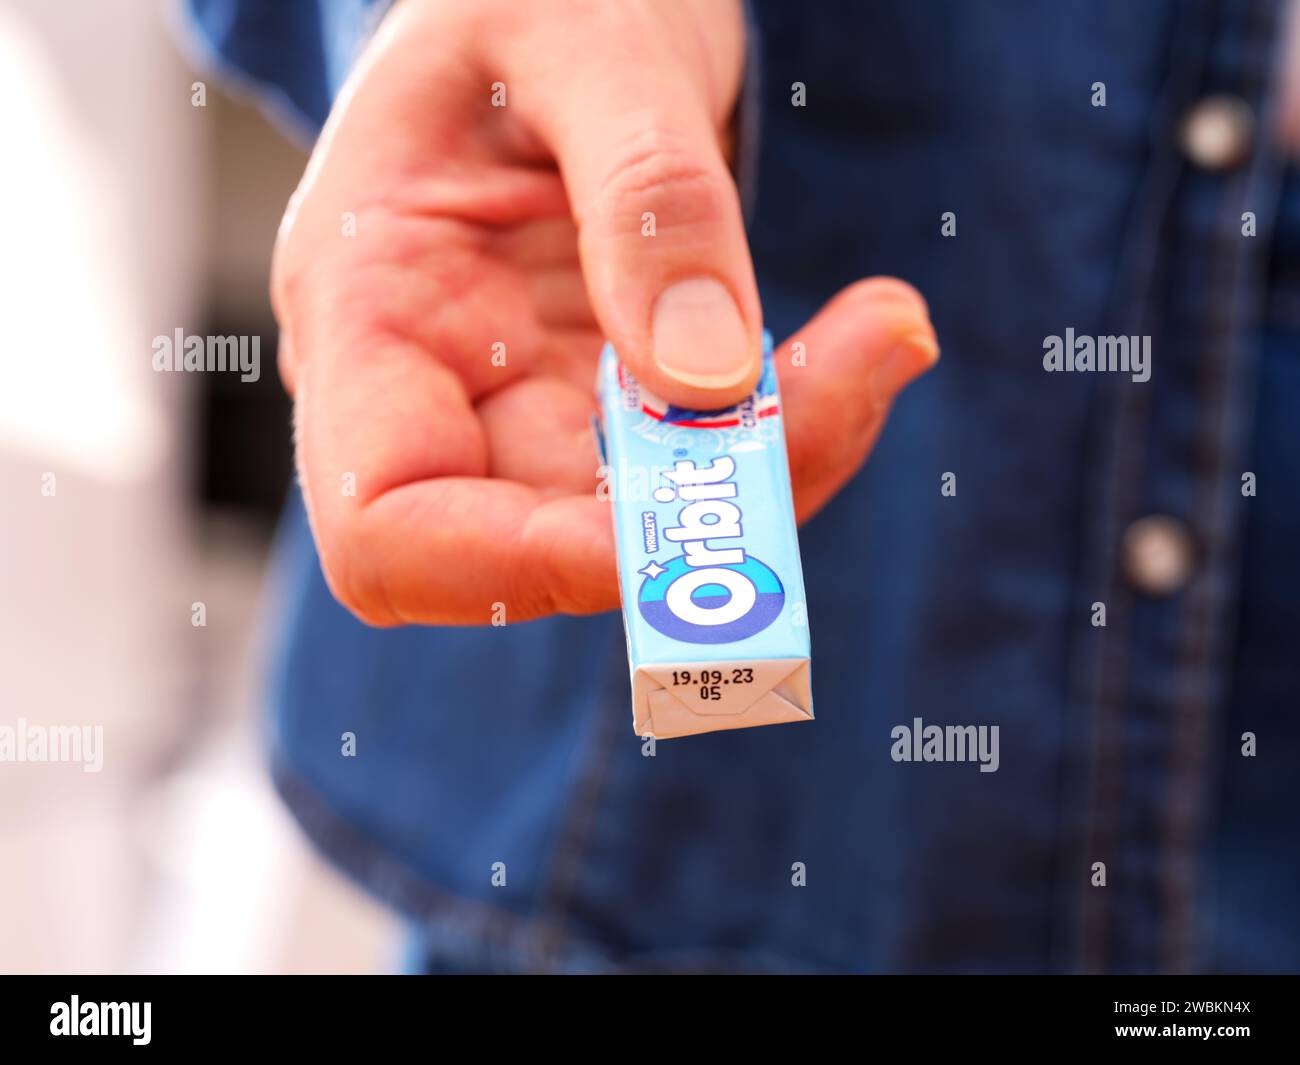 Tambov, Fédération de Russie - 20 décembre 2023 Une femme donne un paquet de chewing-gum Orbit de Wrigley. Banque D'Images